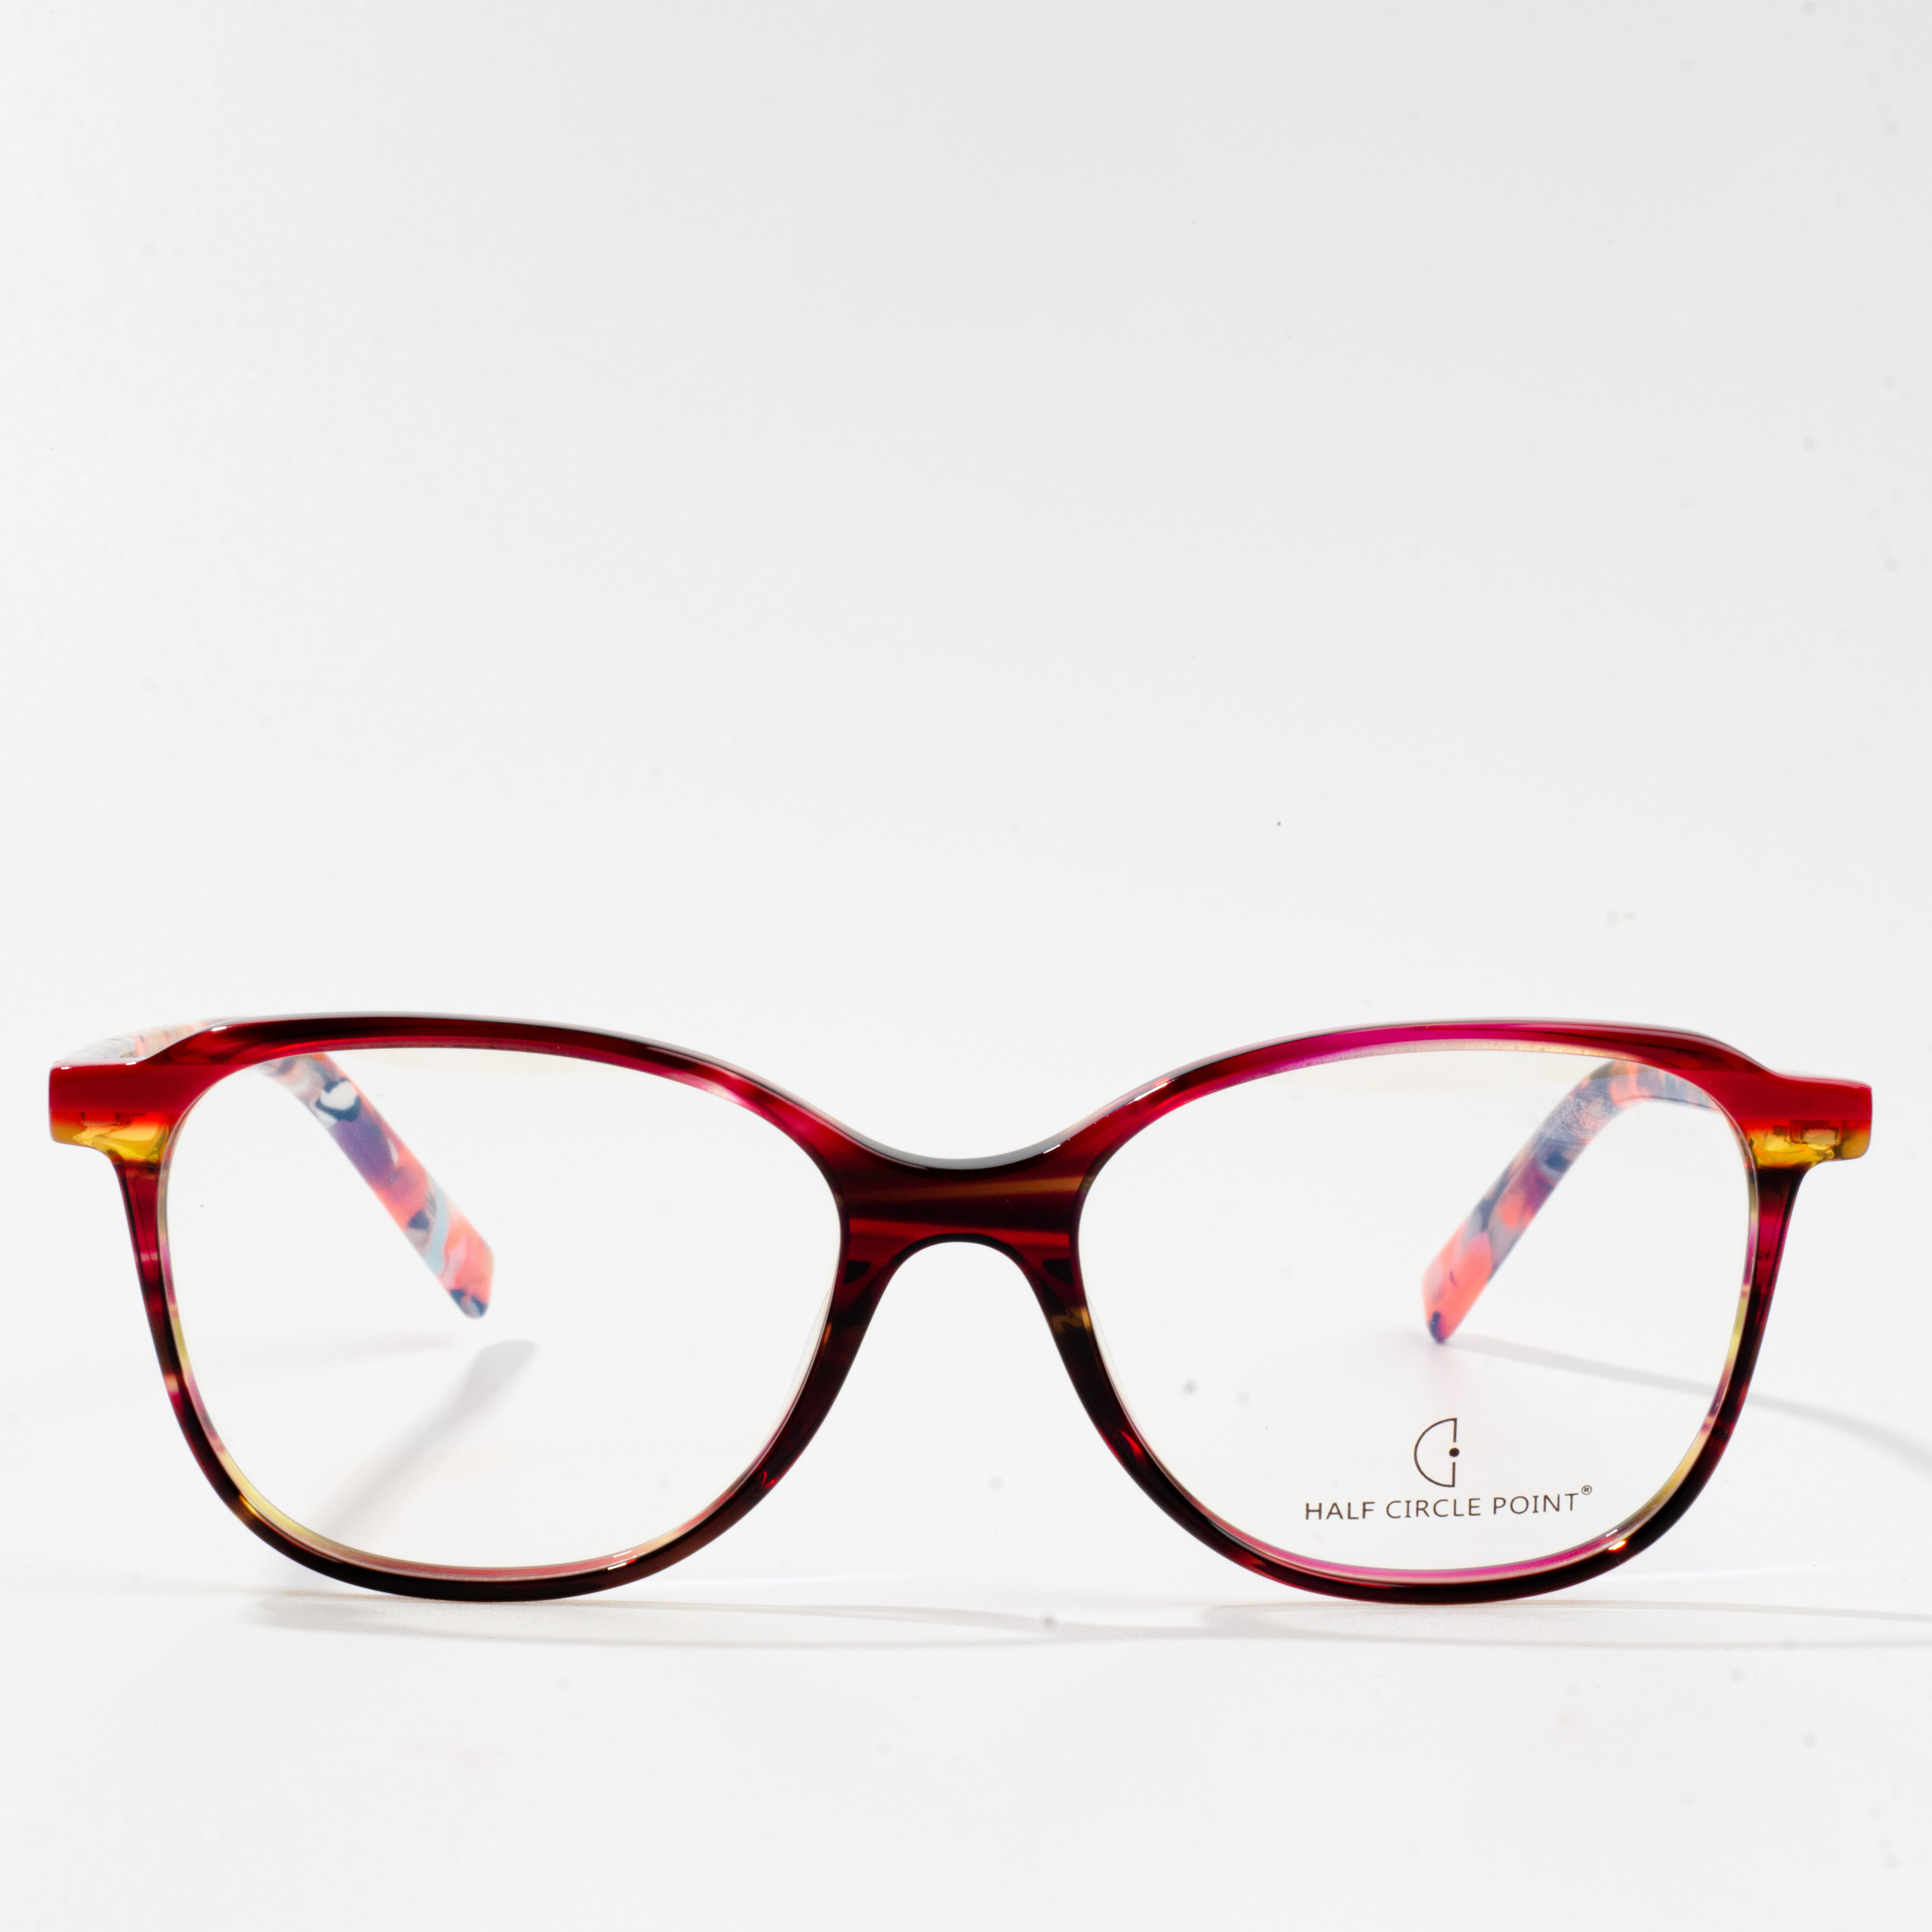 atsetaadiga trendikad prillid